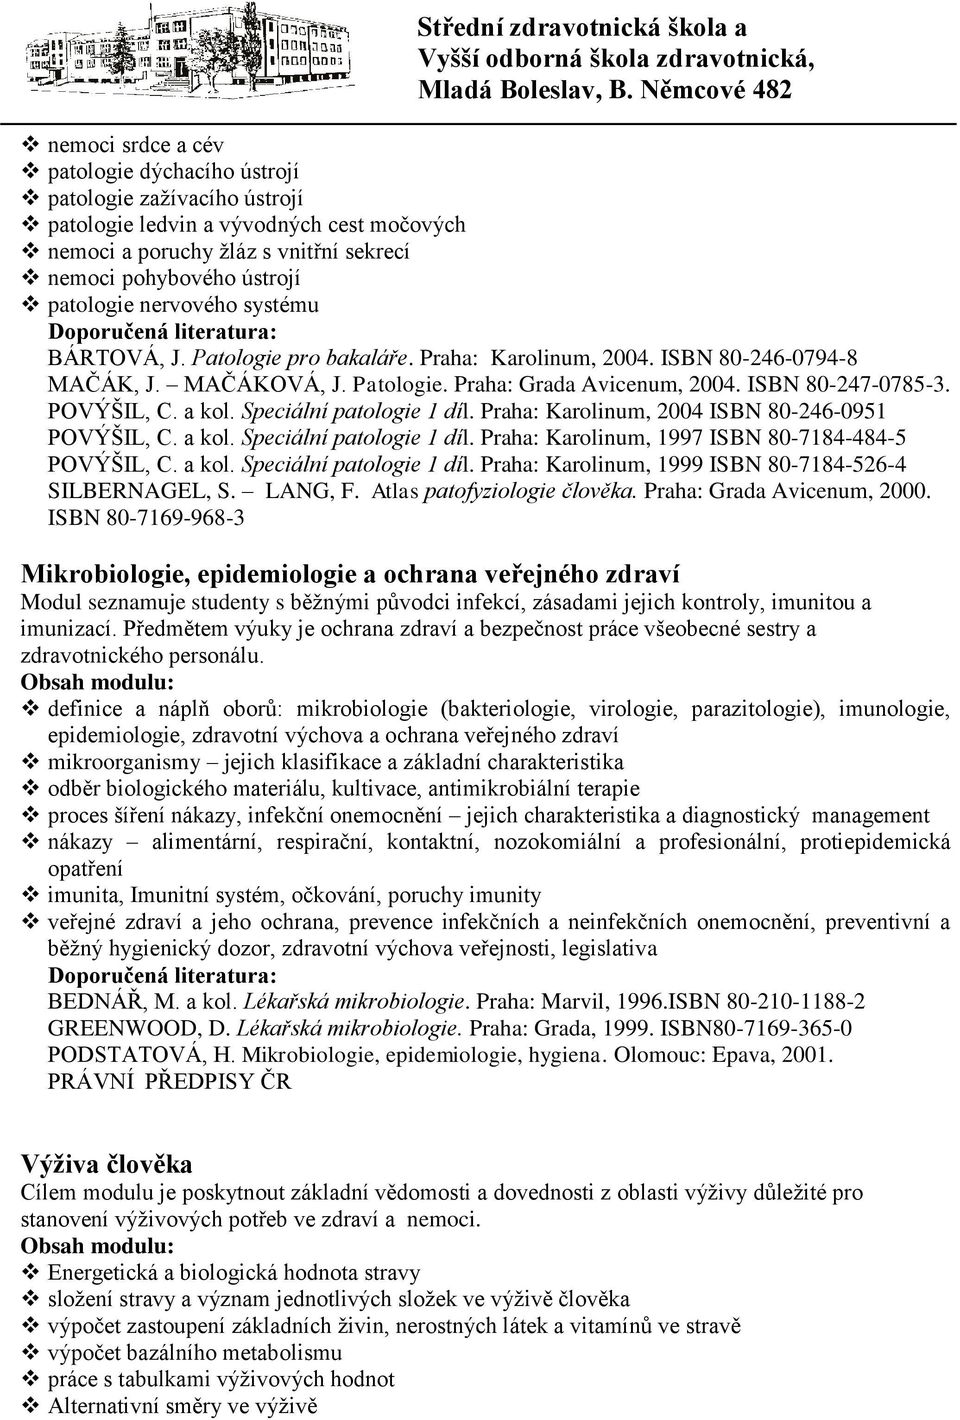 Speciální patologie 1 díl. Praha: Karolinum, 2004 ISBN 80-246-0951 POVÝŠIL, C. a kol. Speciální patologie 1 díl. Praha: Karolinum, 1997 ISBN 80-7184-484-5 POVÝŠIL, C. a kol. Speciální patologie 1 díl. Praha: Karolinum, 1999 ISBN 80-7184-526-4 SILBERNAGEL, S.